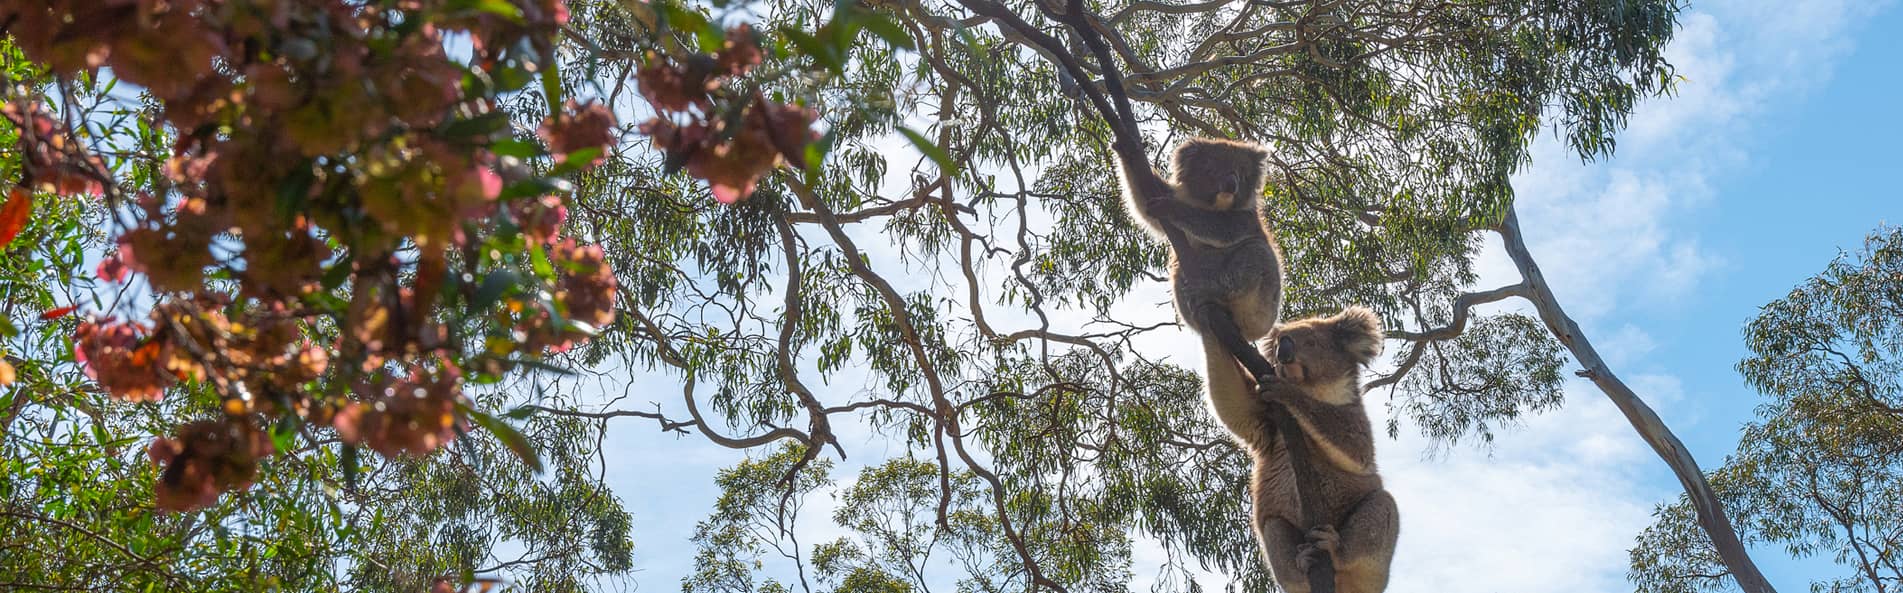 Koala bears climbing tree